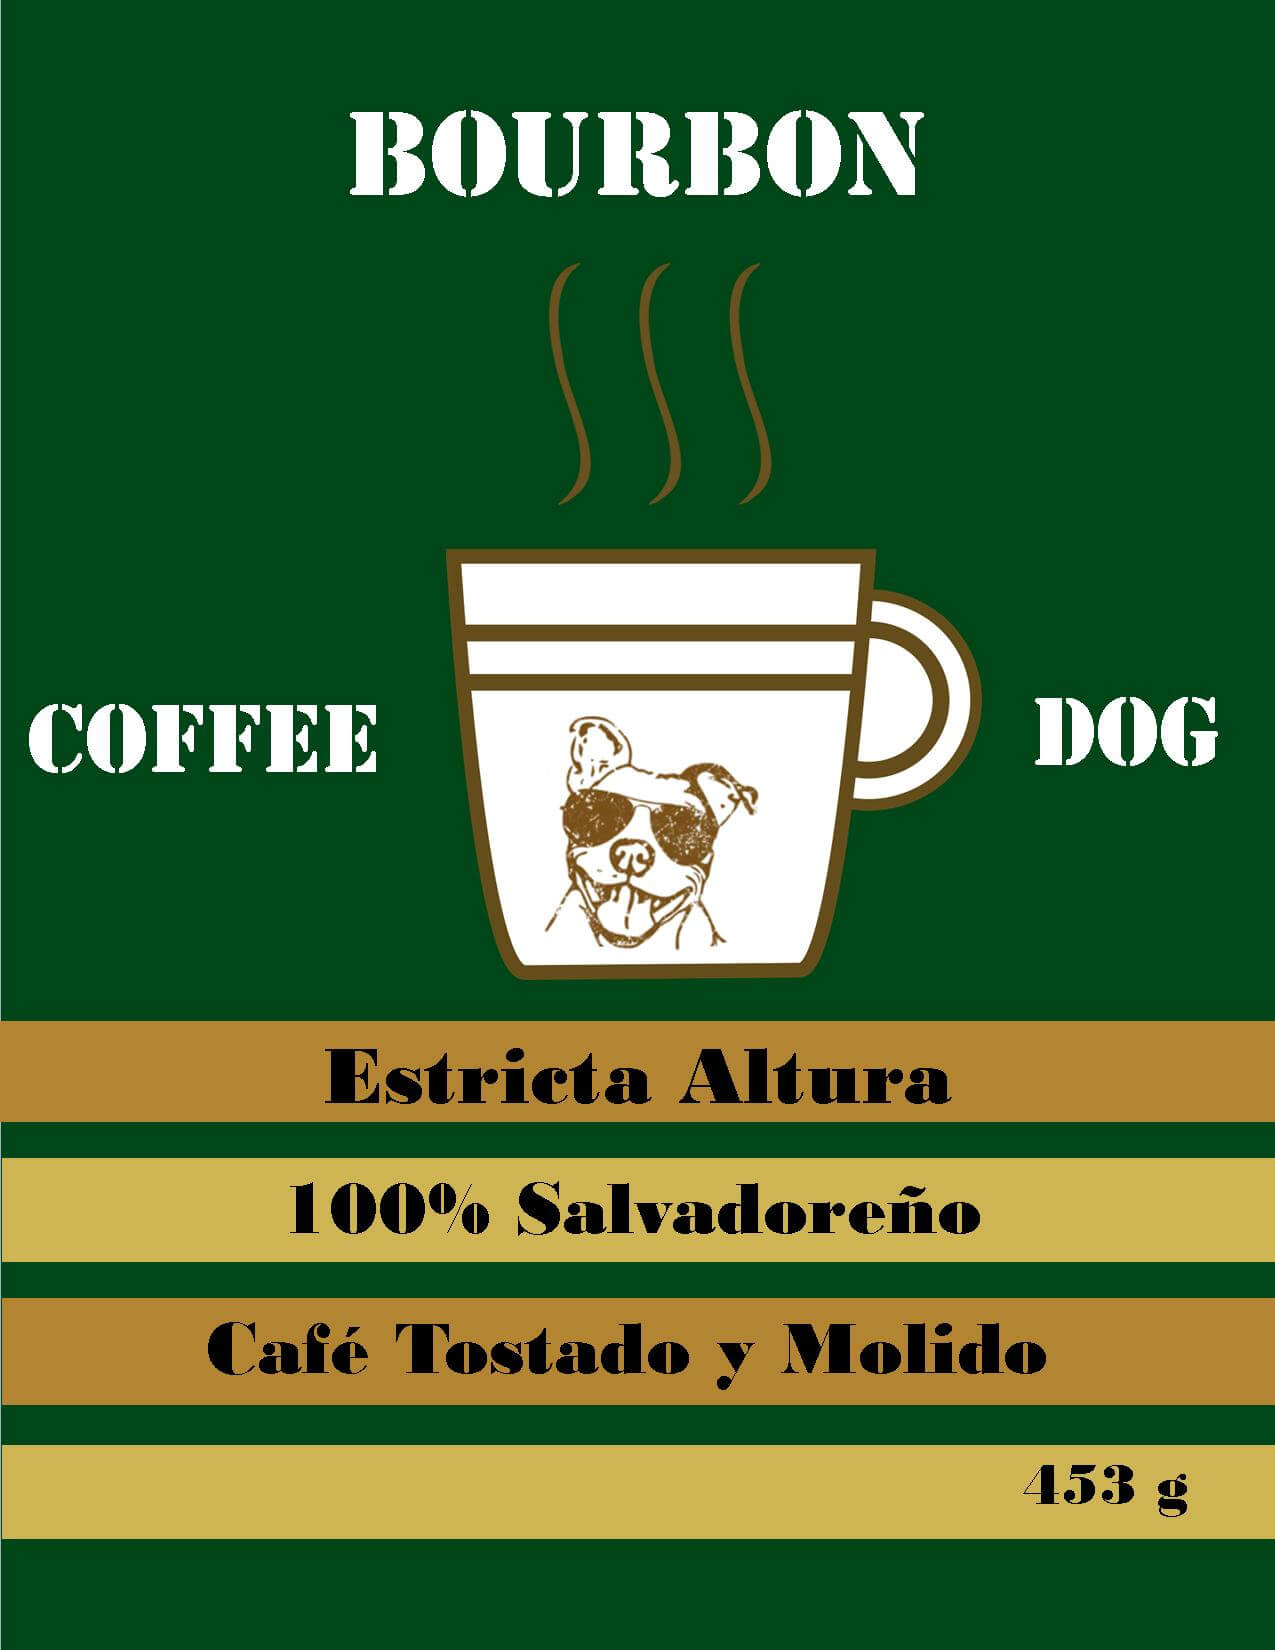 Plan de Digitalización El Salvador. Coffee Dog, logo del café.